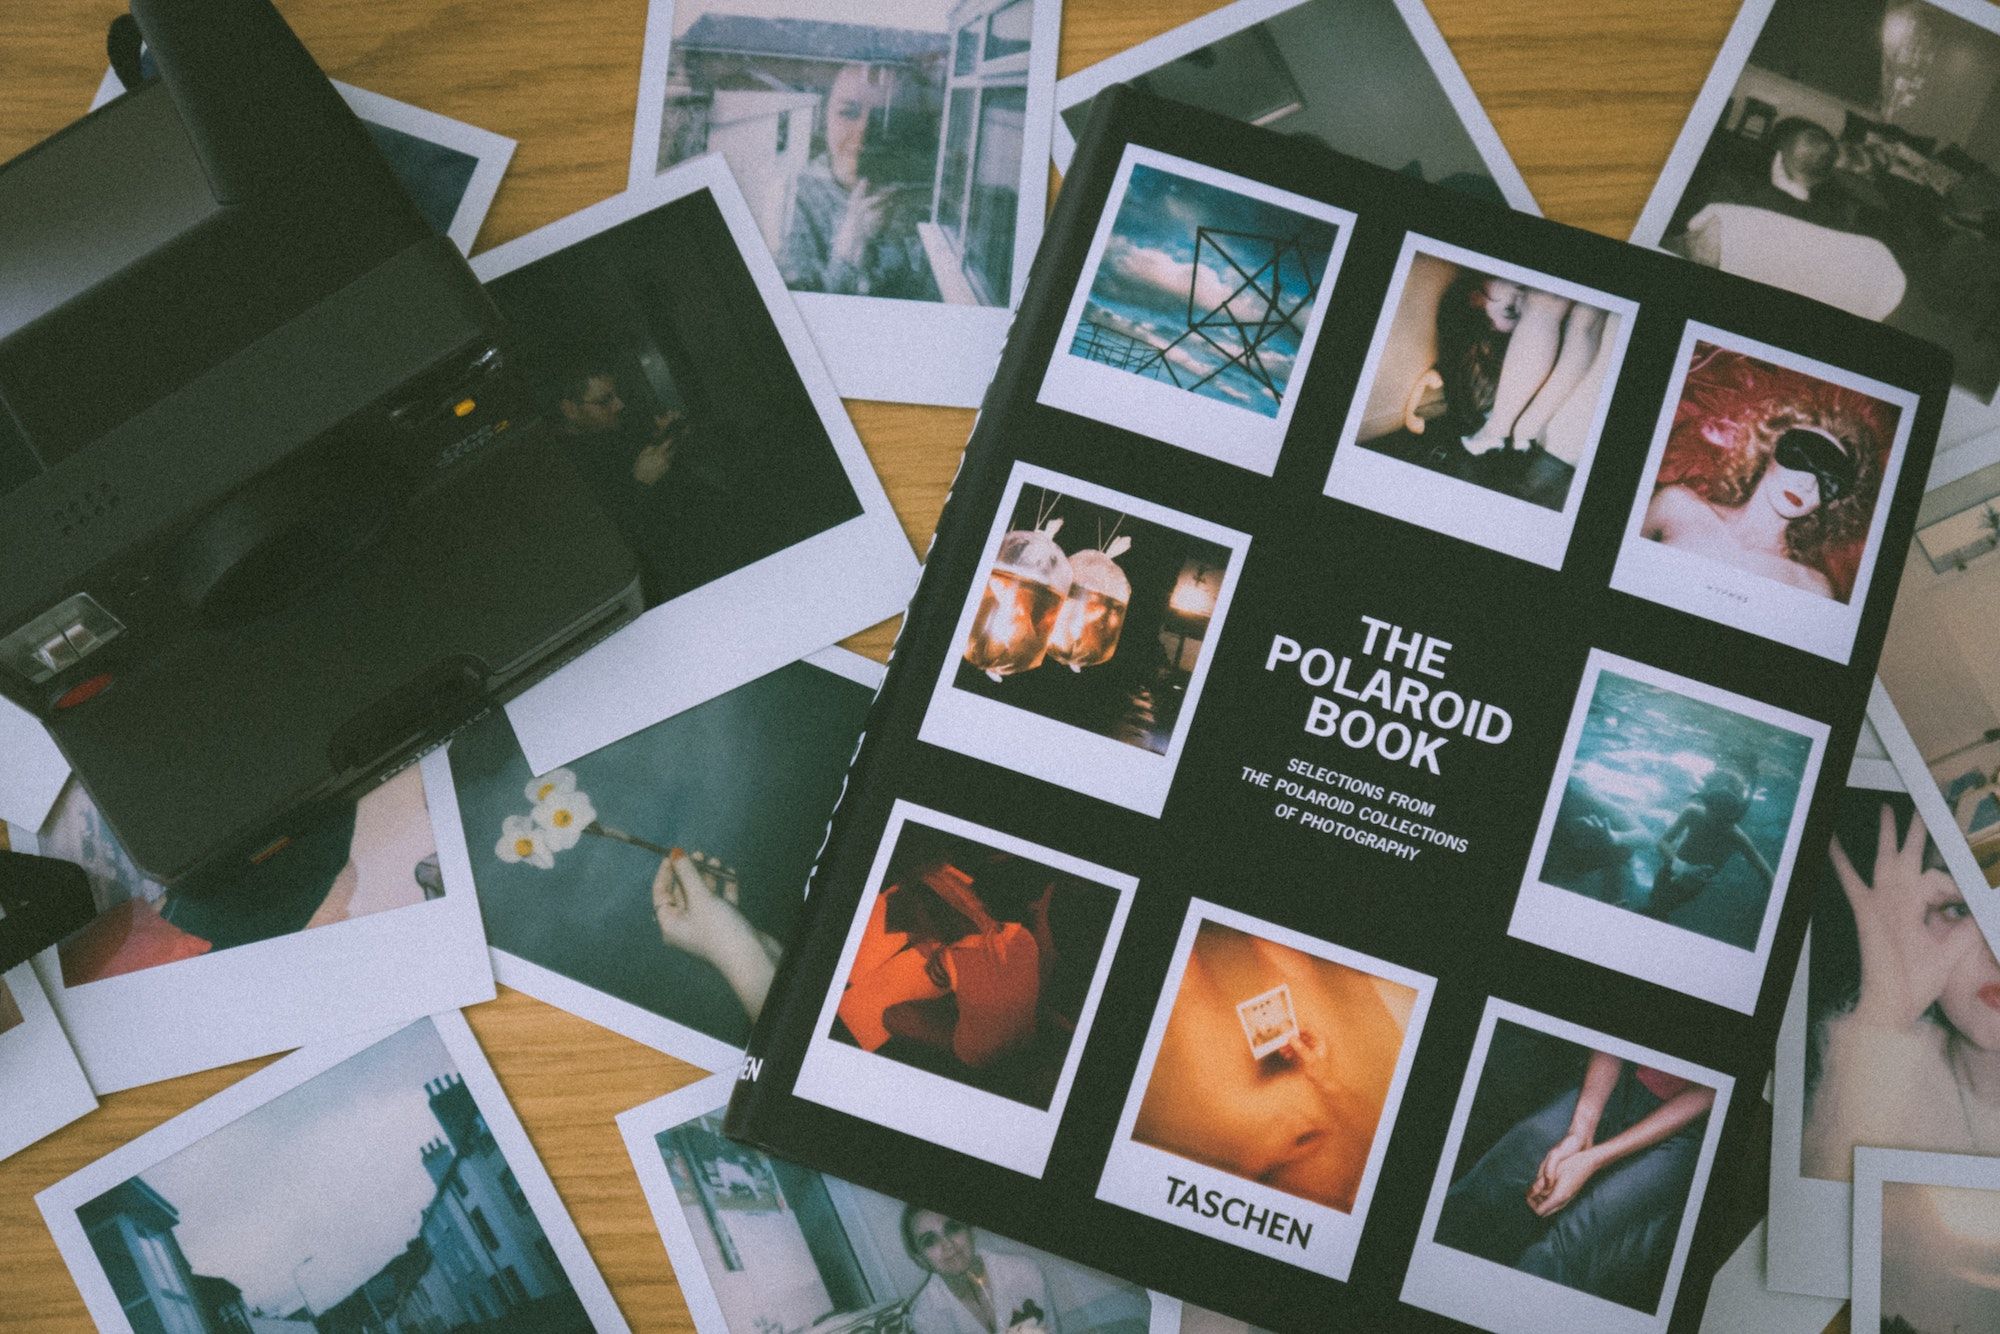 2019 Polaroid-inspired Gift Guide